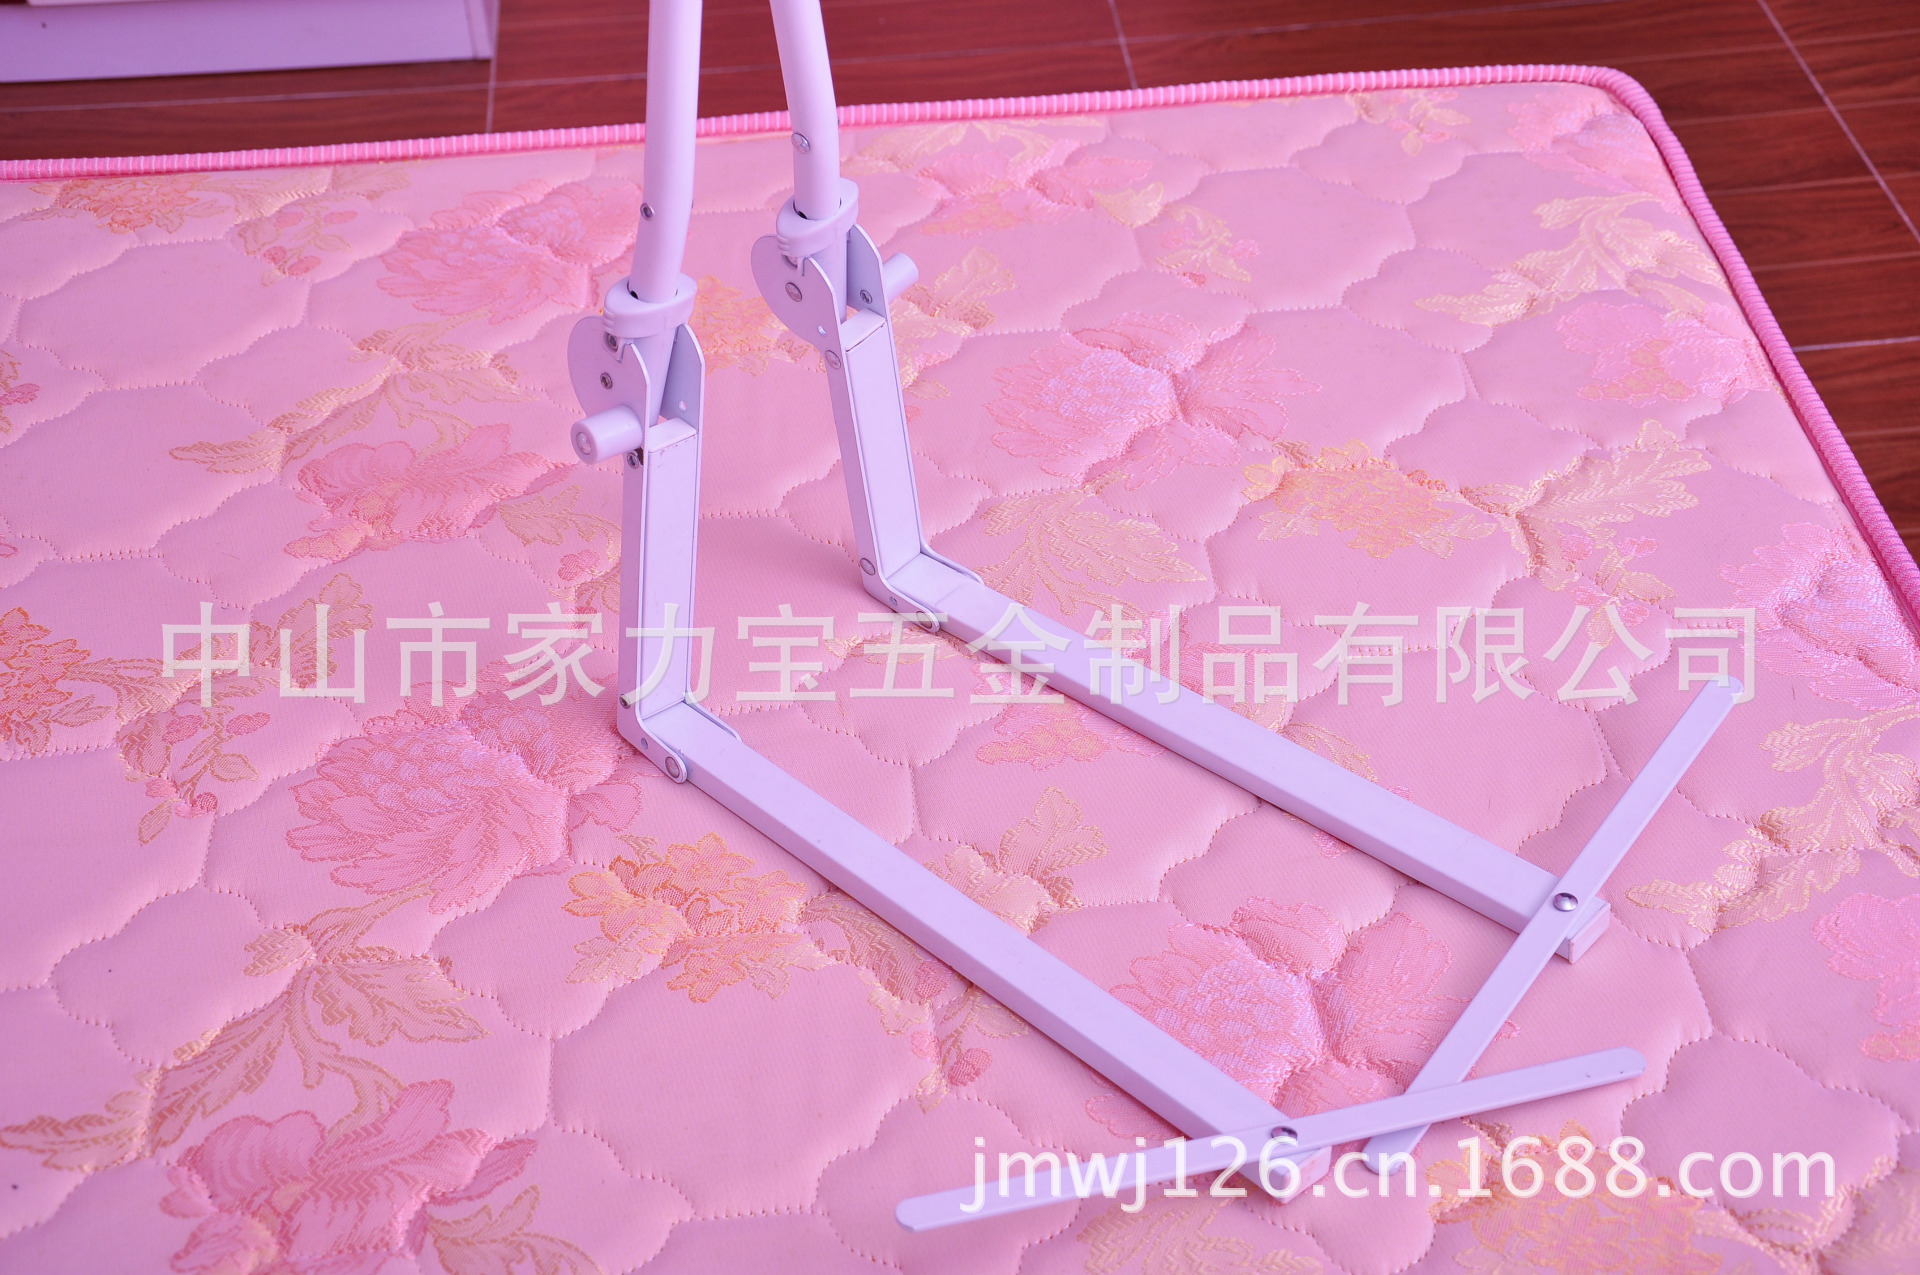 【热销产品】供应婴儿床护栏支架,1.8米,1.5米